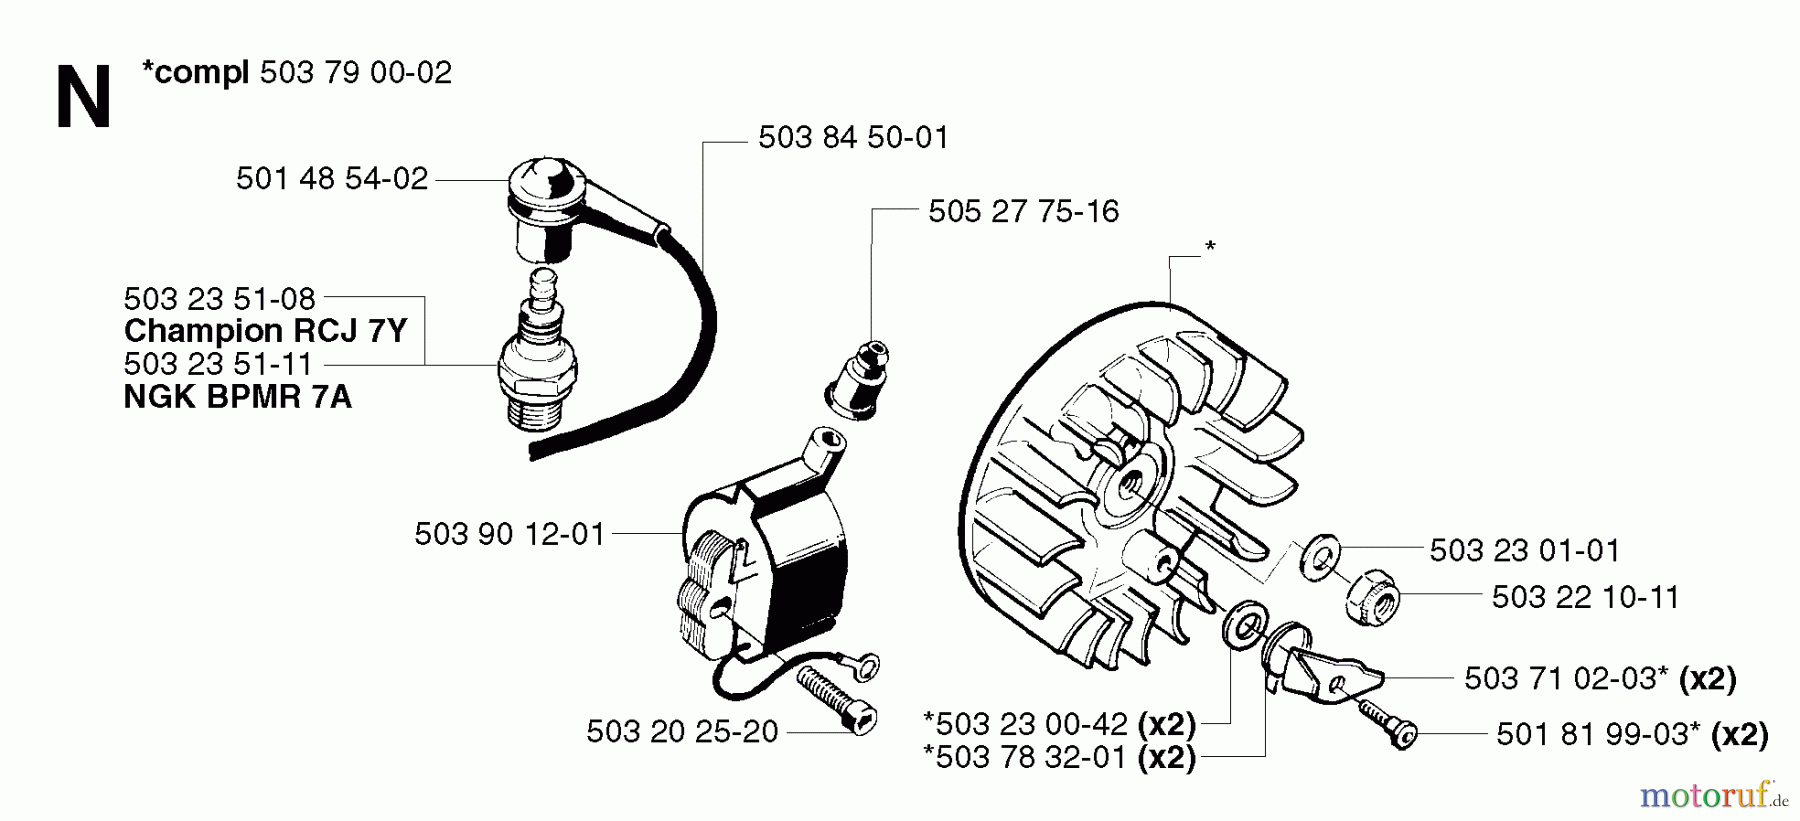  Jonsered Motorsensen, Trimmer RS44 EPA - Jonsered String/Brush Trimmer (2002-08) IGNITION SYSTEM